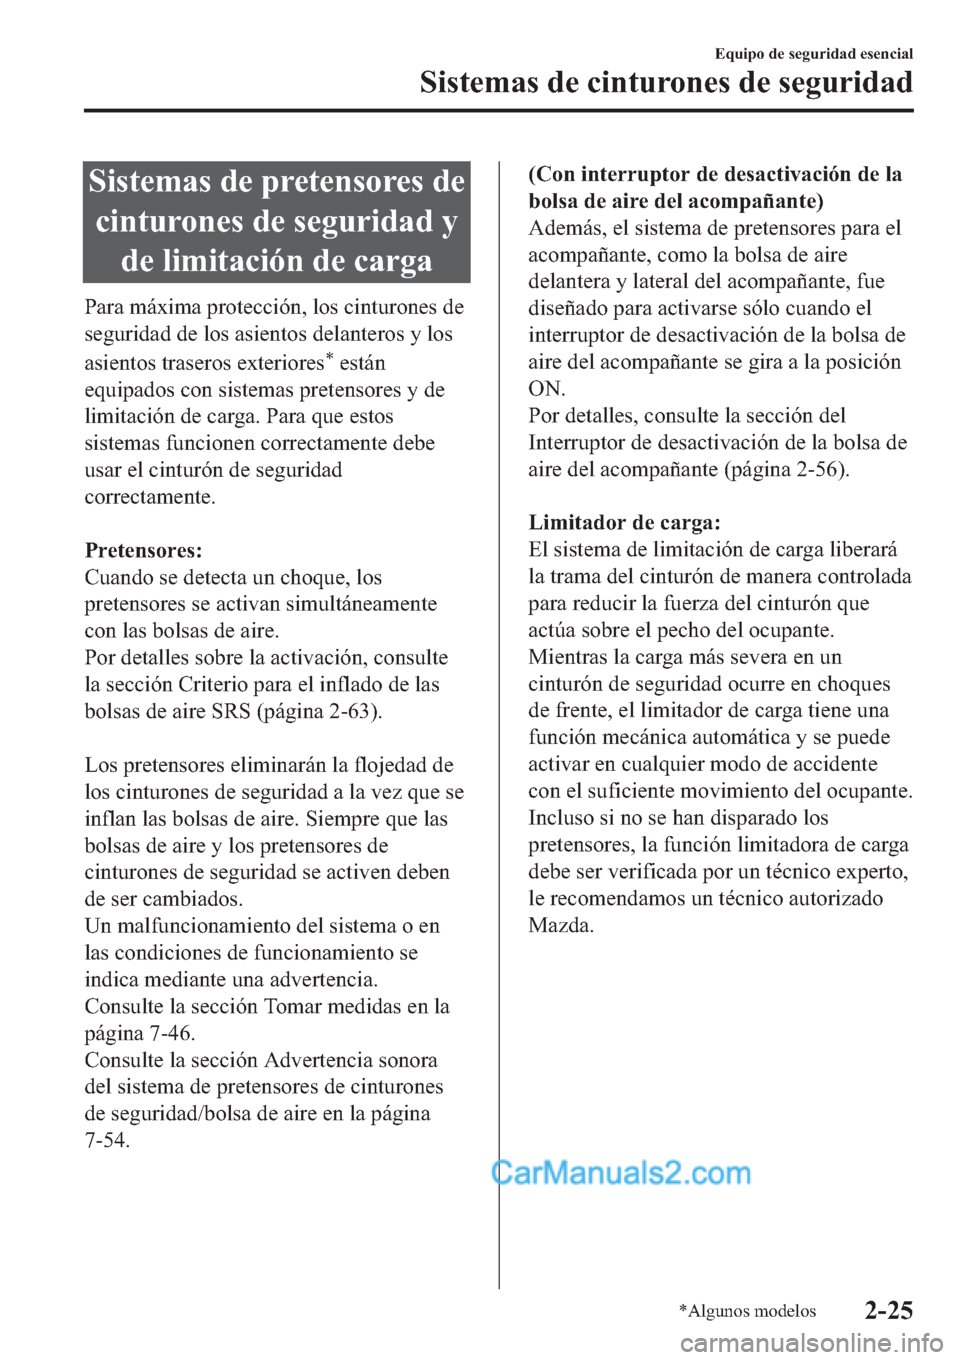 MAZDA MODEL 2 2019  Manual del propietario (in Spanish) �6�L�V�W�H�P�D�V��G�H��S�U�H�W�H�Q�V�R�U�H�V��G�H
�F�L�Q�W�X�U�R�Q�H�V��G�H��V�H�J�X�U�L�G�D�G��\
�G�H��O�L�P�L�W�D�F�L�y�Q��G�H��F�D�U�J�D
�3�D�U�D��P�i�[�L�P�D��S�U�R�W�H�F�F�L�y�Q���O�